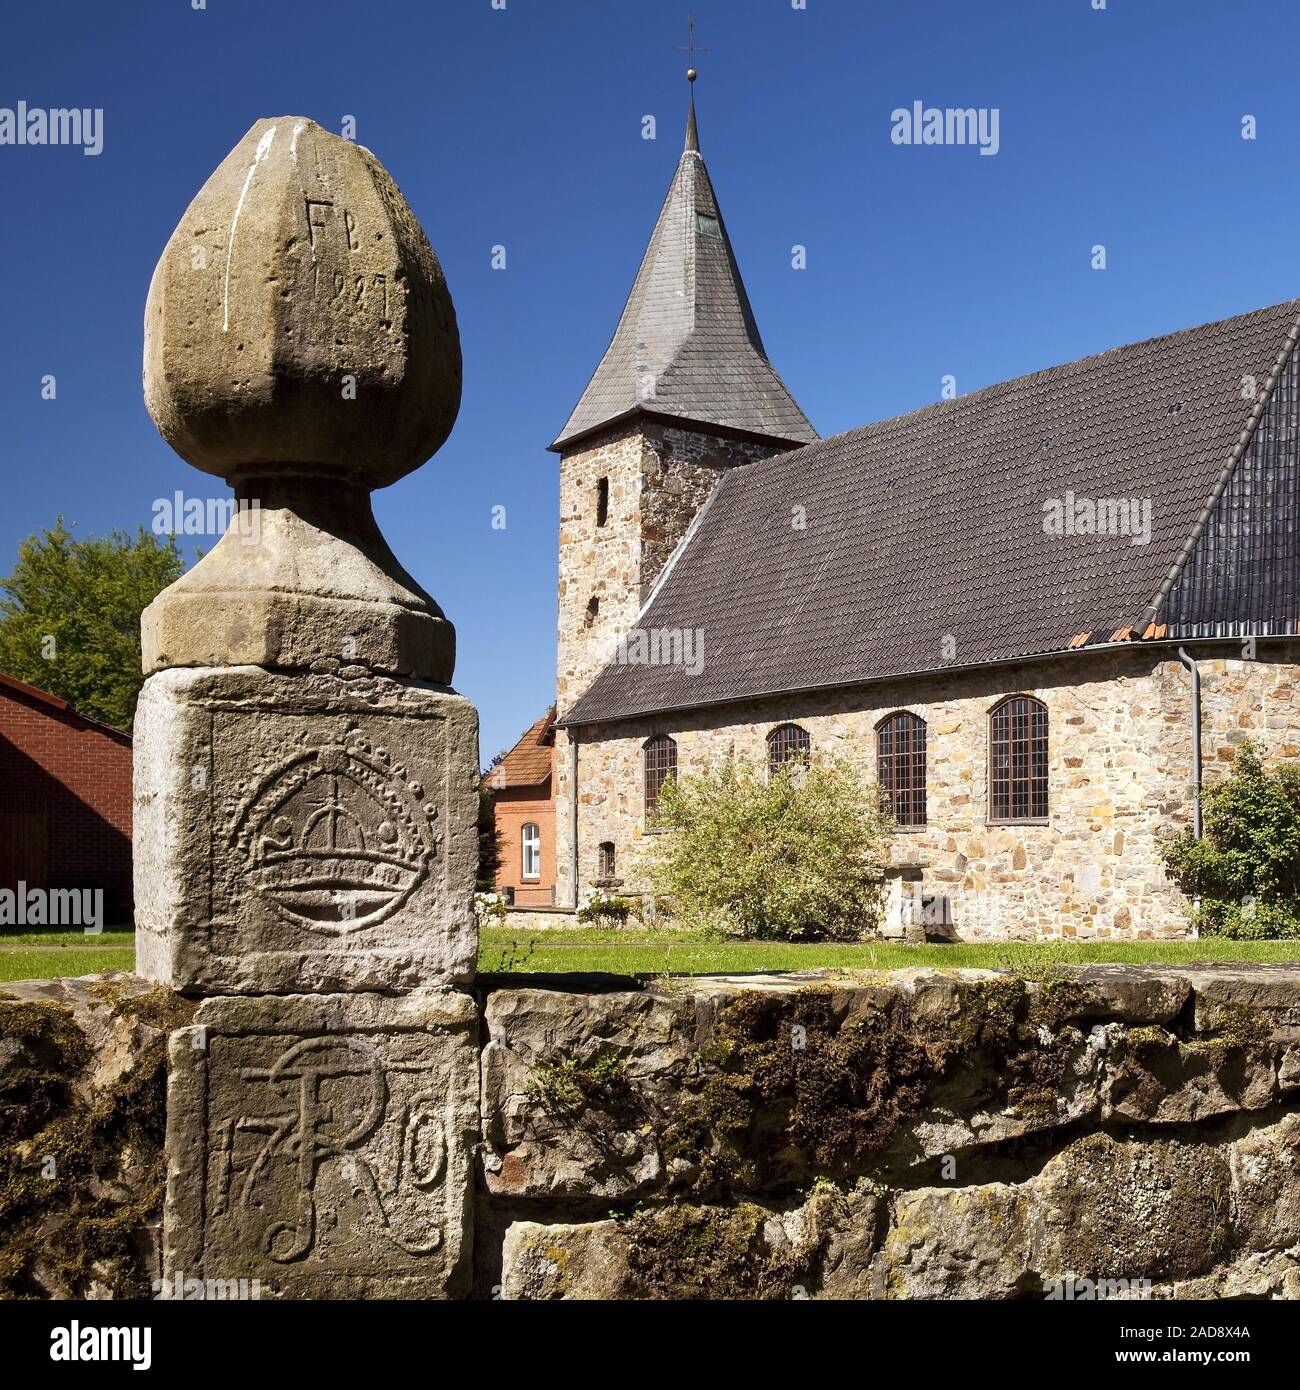 Evangelische Kirche Schuesselburg, Petershagen, Nordrhein-Westfalen, Deutschland, Europa Stockfoto